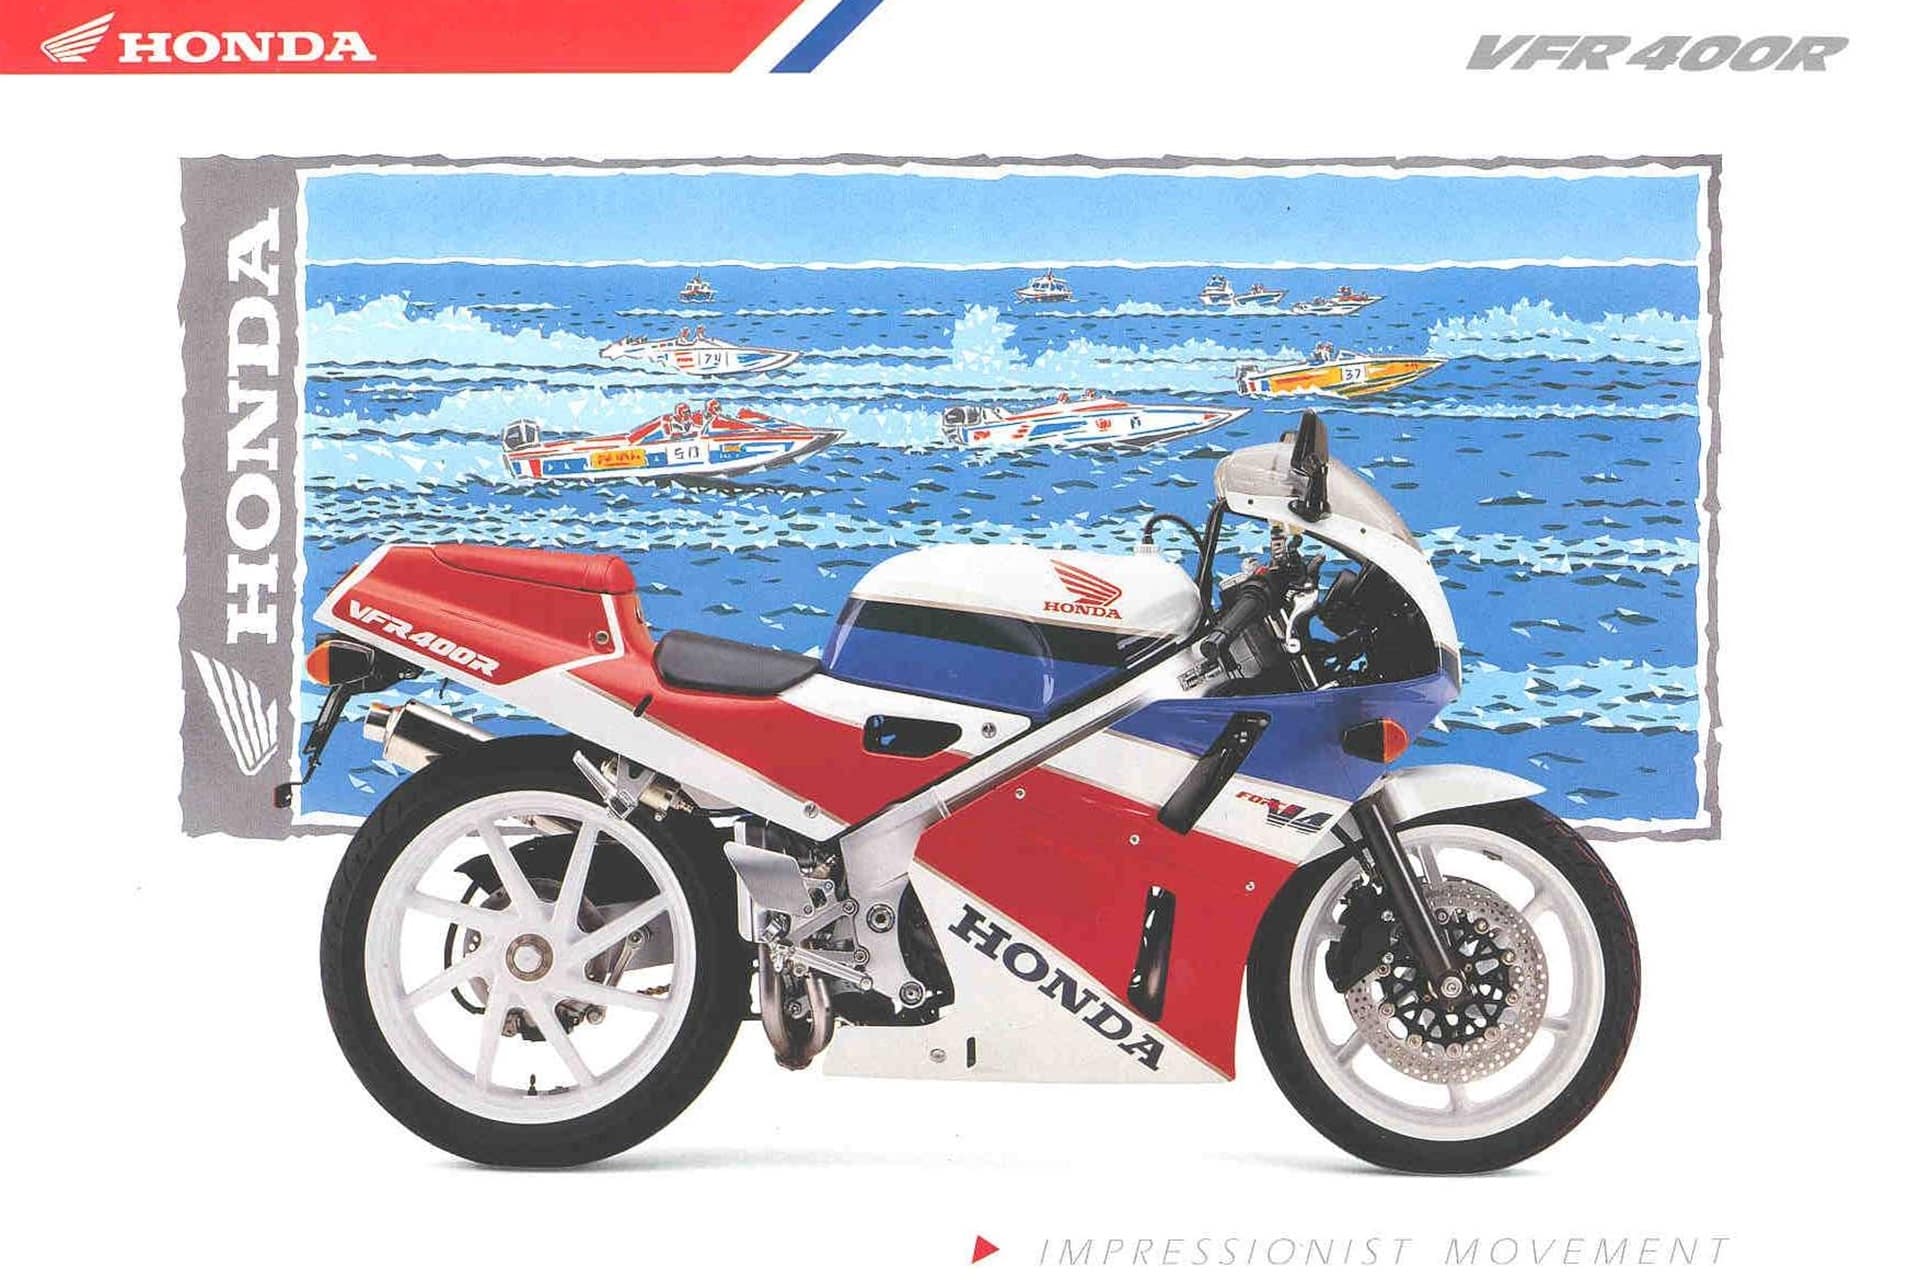 Motor V4 de Honda: "El poder de los sueños"